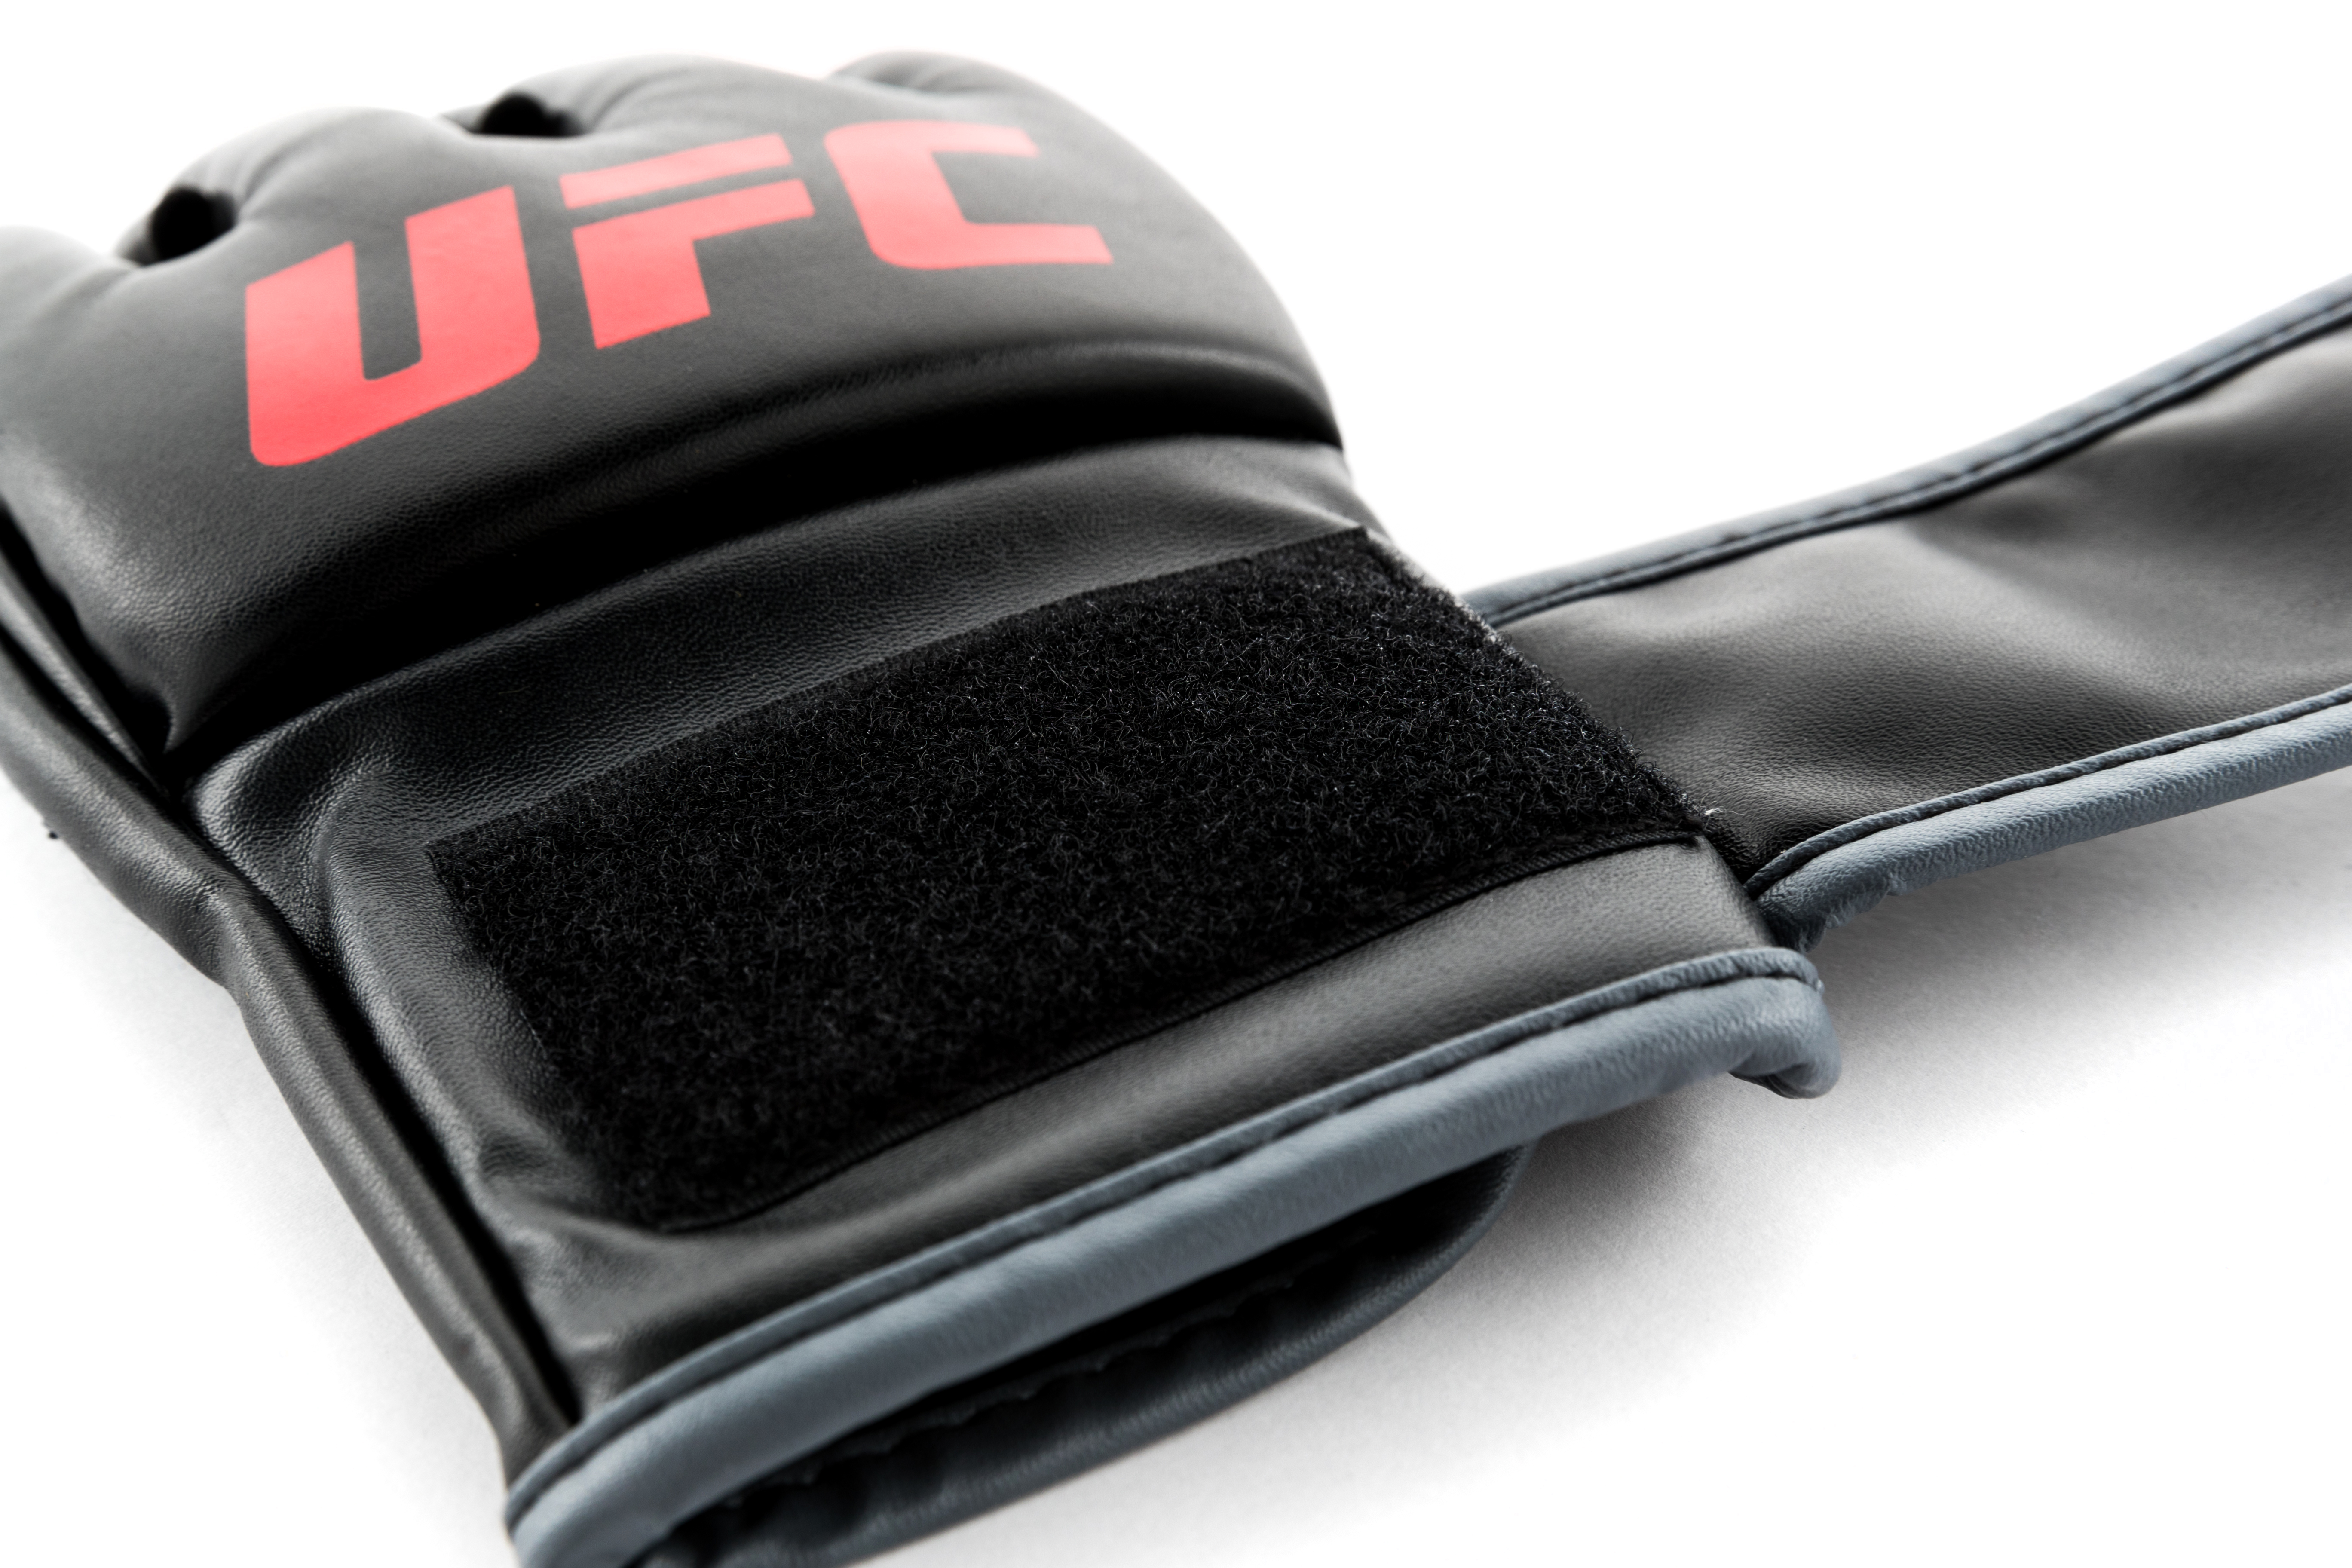 UFC MMA Gloves S/M